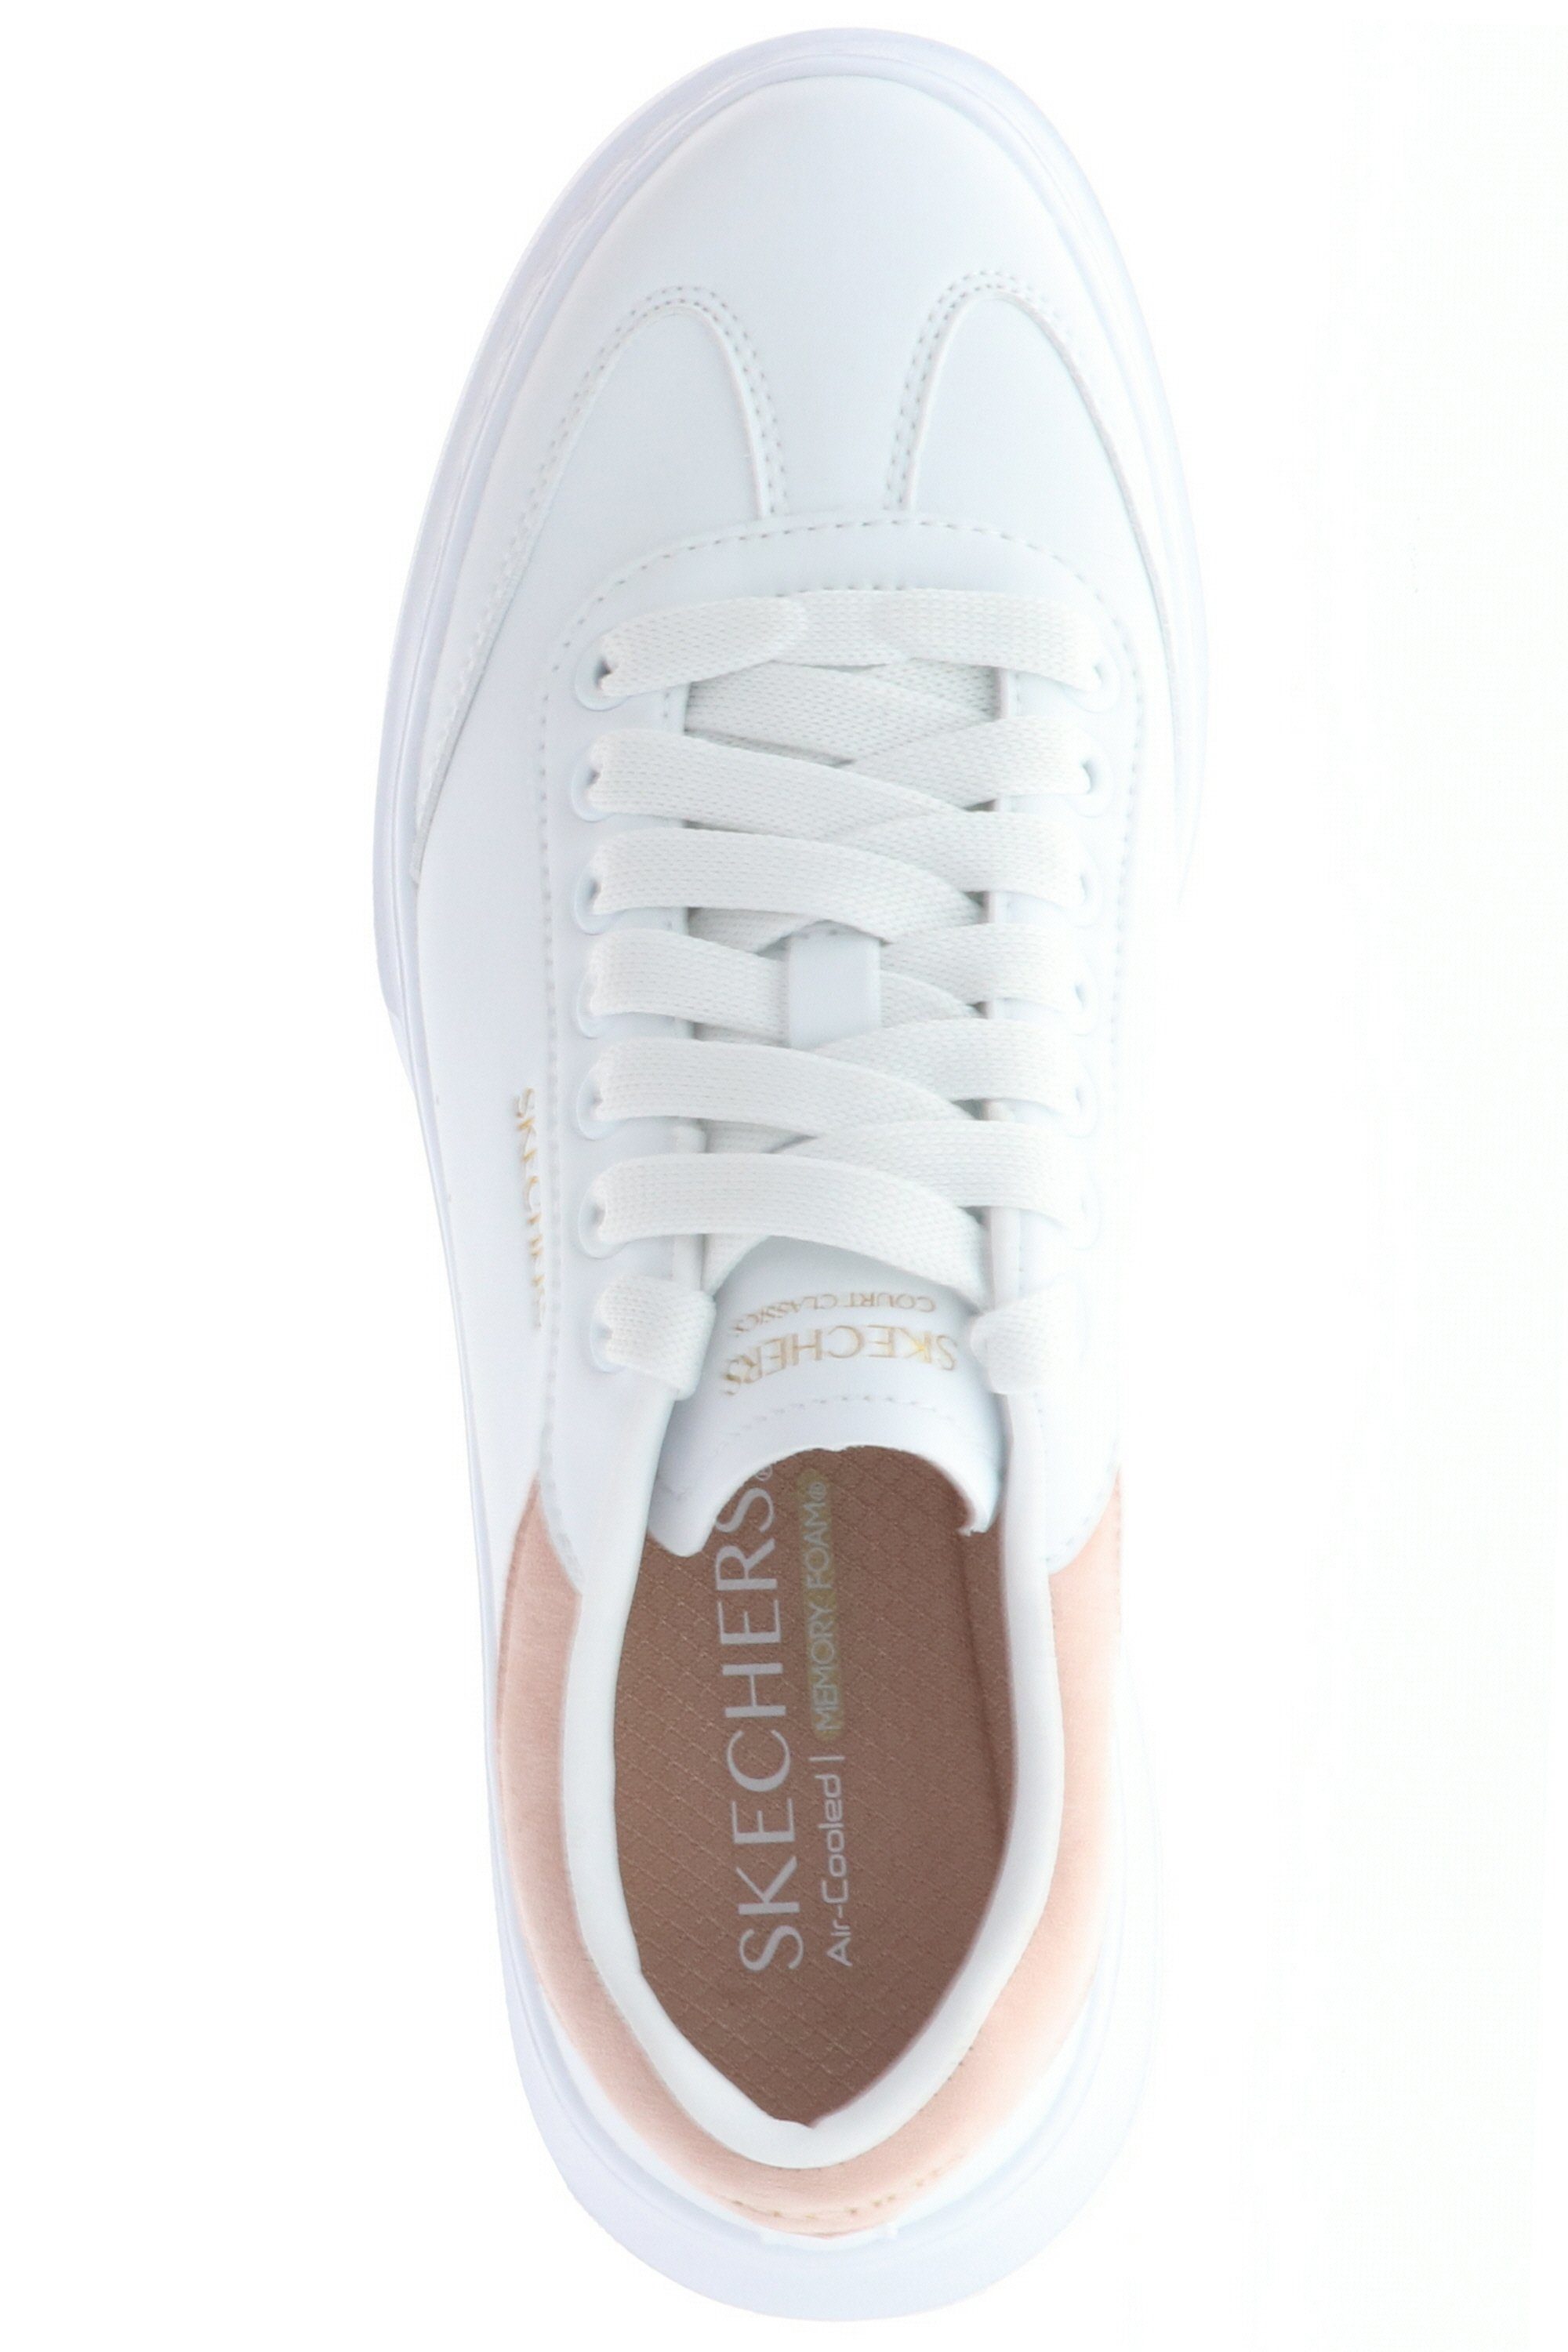 white/pink Cordova Behavior (20203205) White/Pink aus Sohle 185060/WPK Skechers Classic-Best rutschhemmende Gummi Sneaker